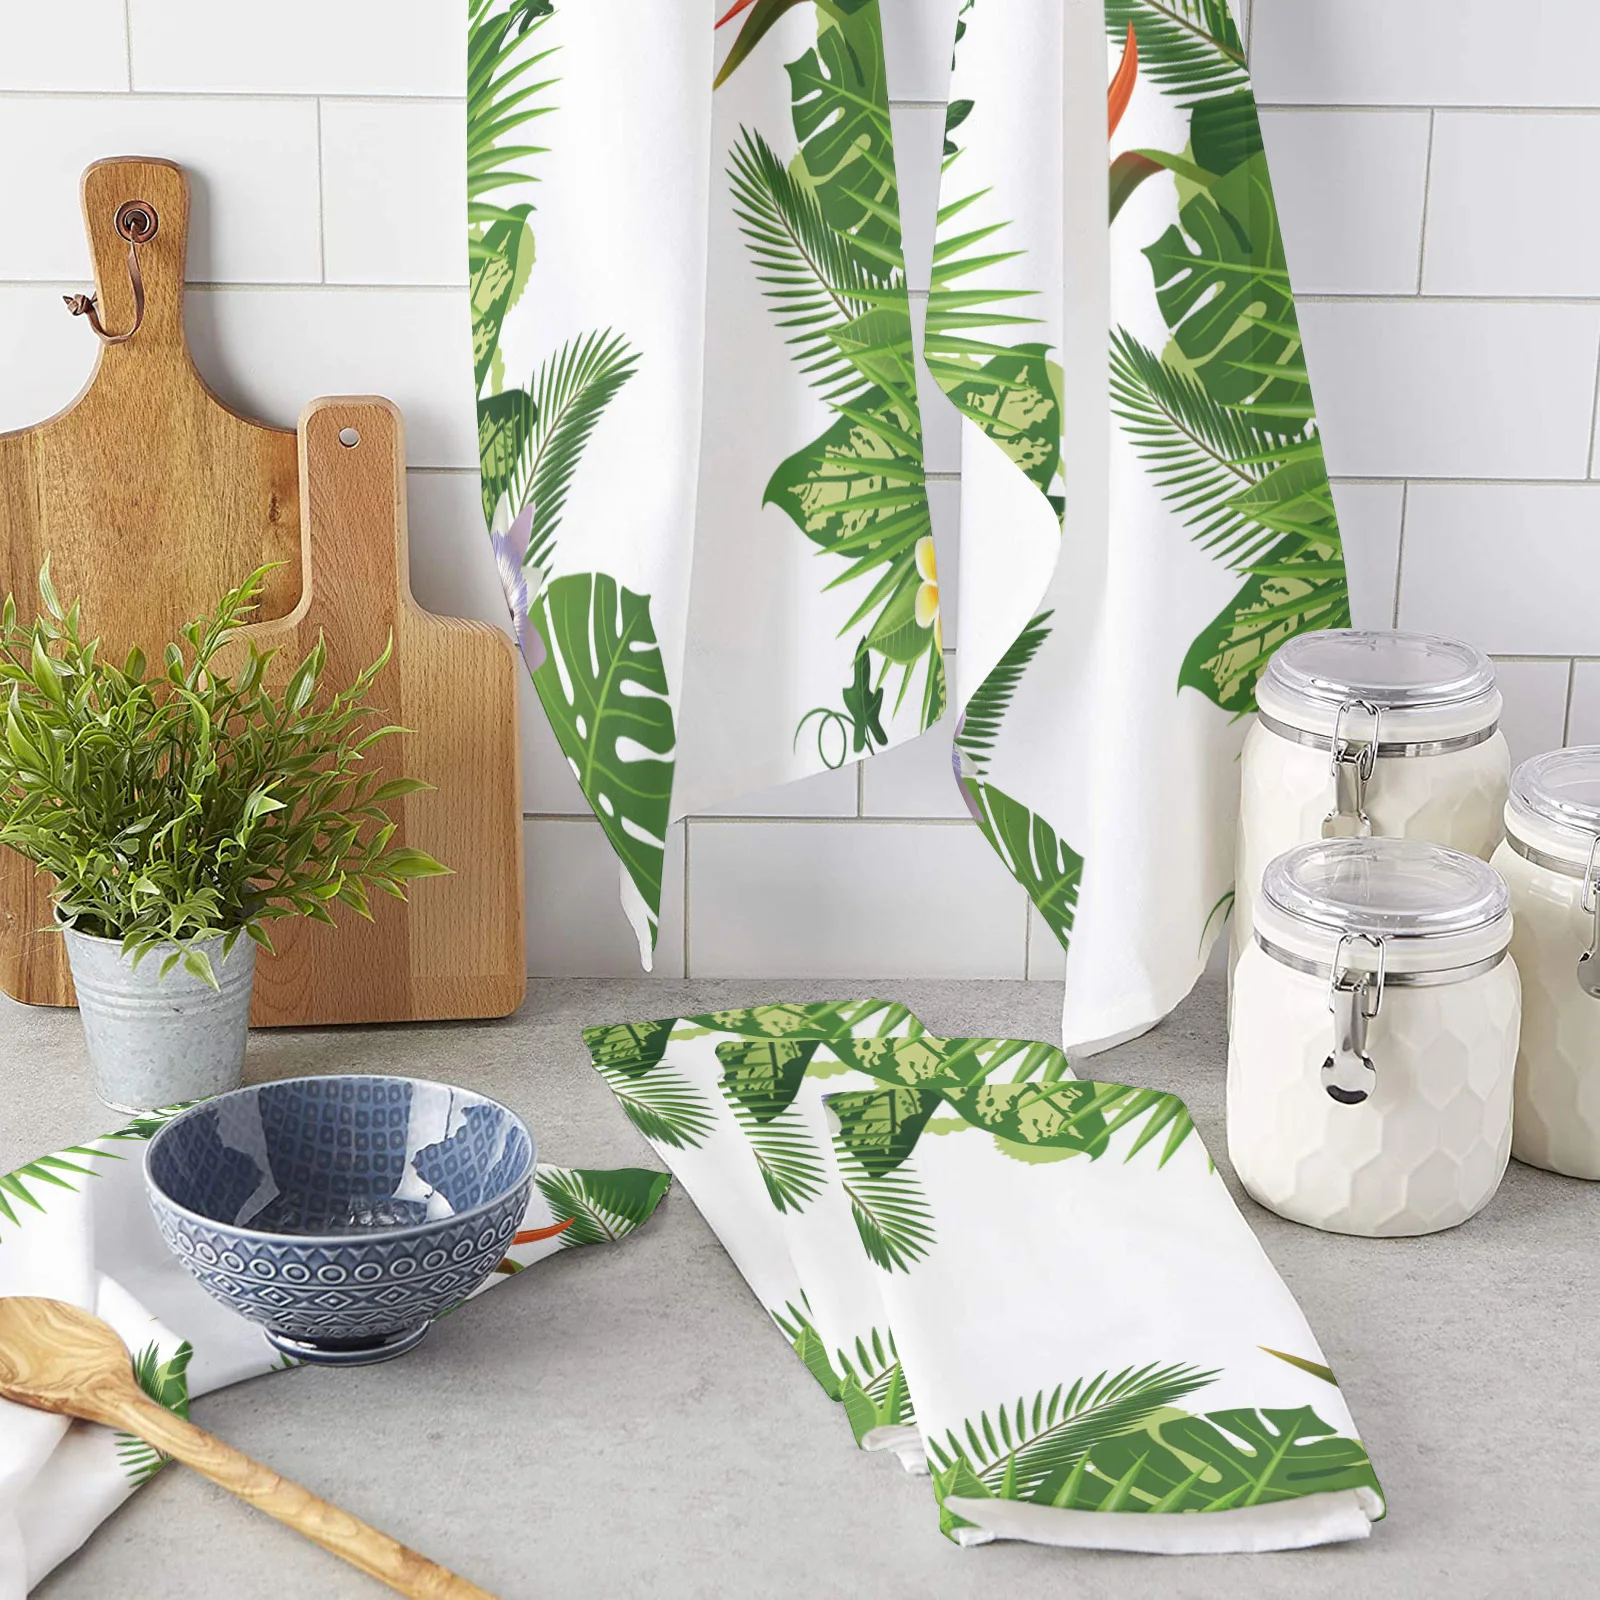 

Полотенце кухонное с принтом зеленых листьев, бананов, тропических джунглей